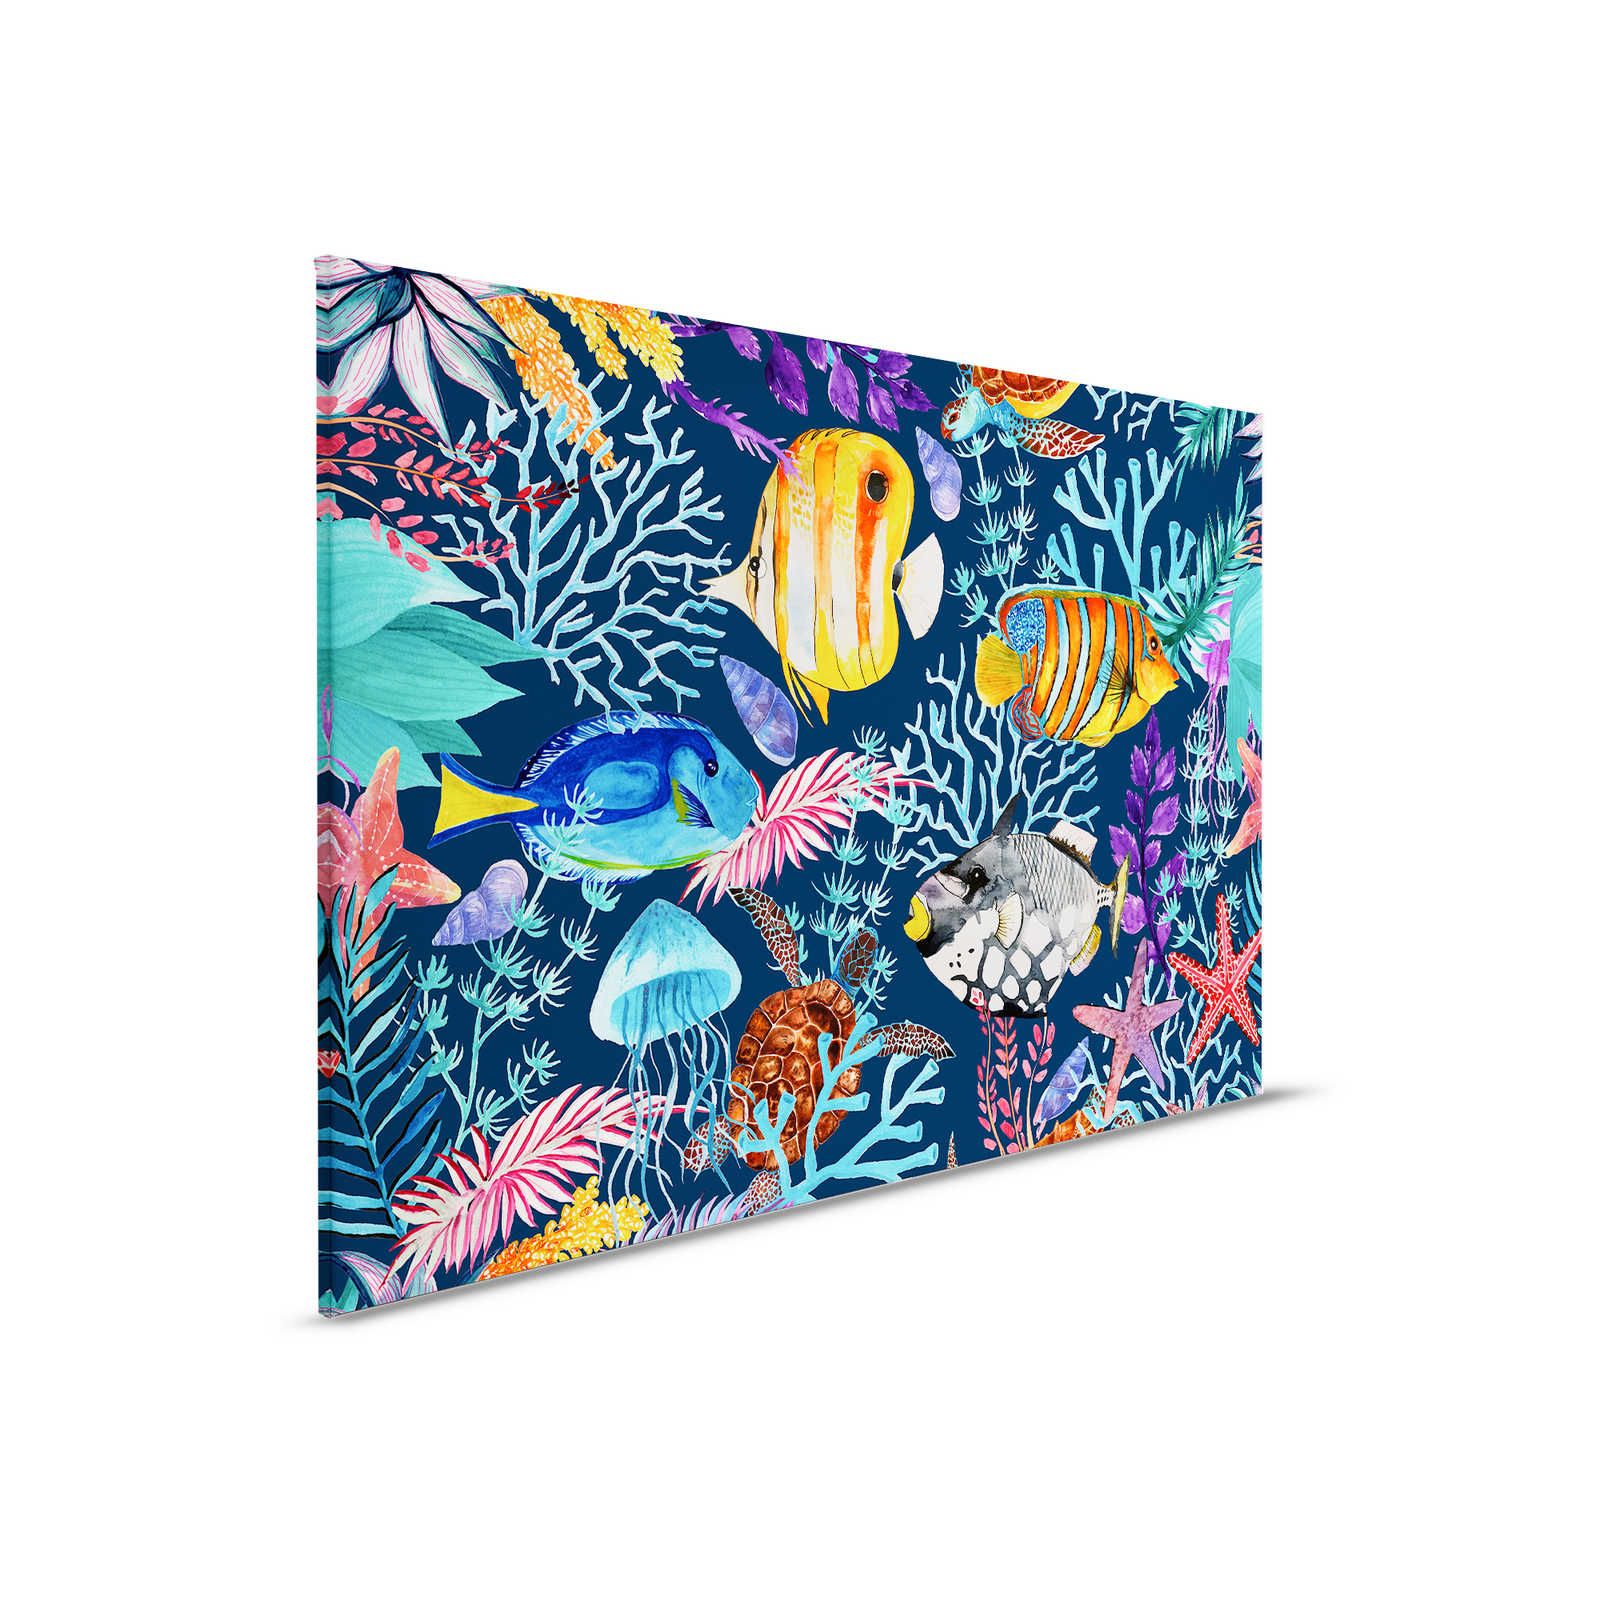 Pittura su tela subacquea con pesci e stelle marine colorate - 0,90 m x 0,60 m
